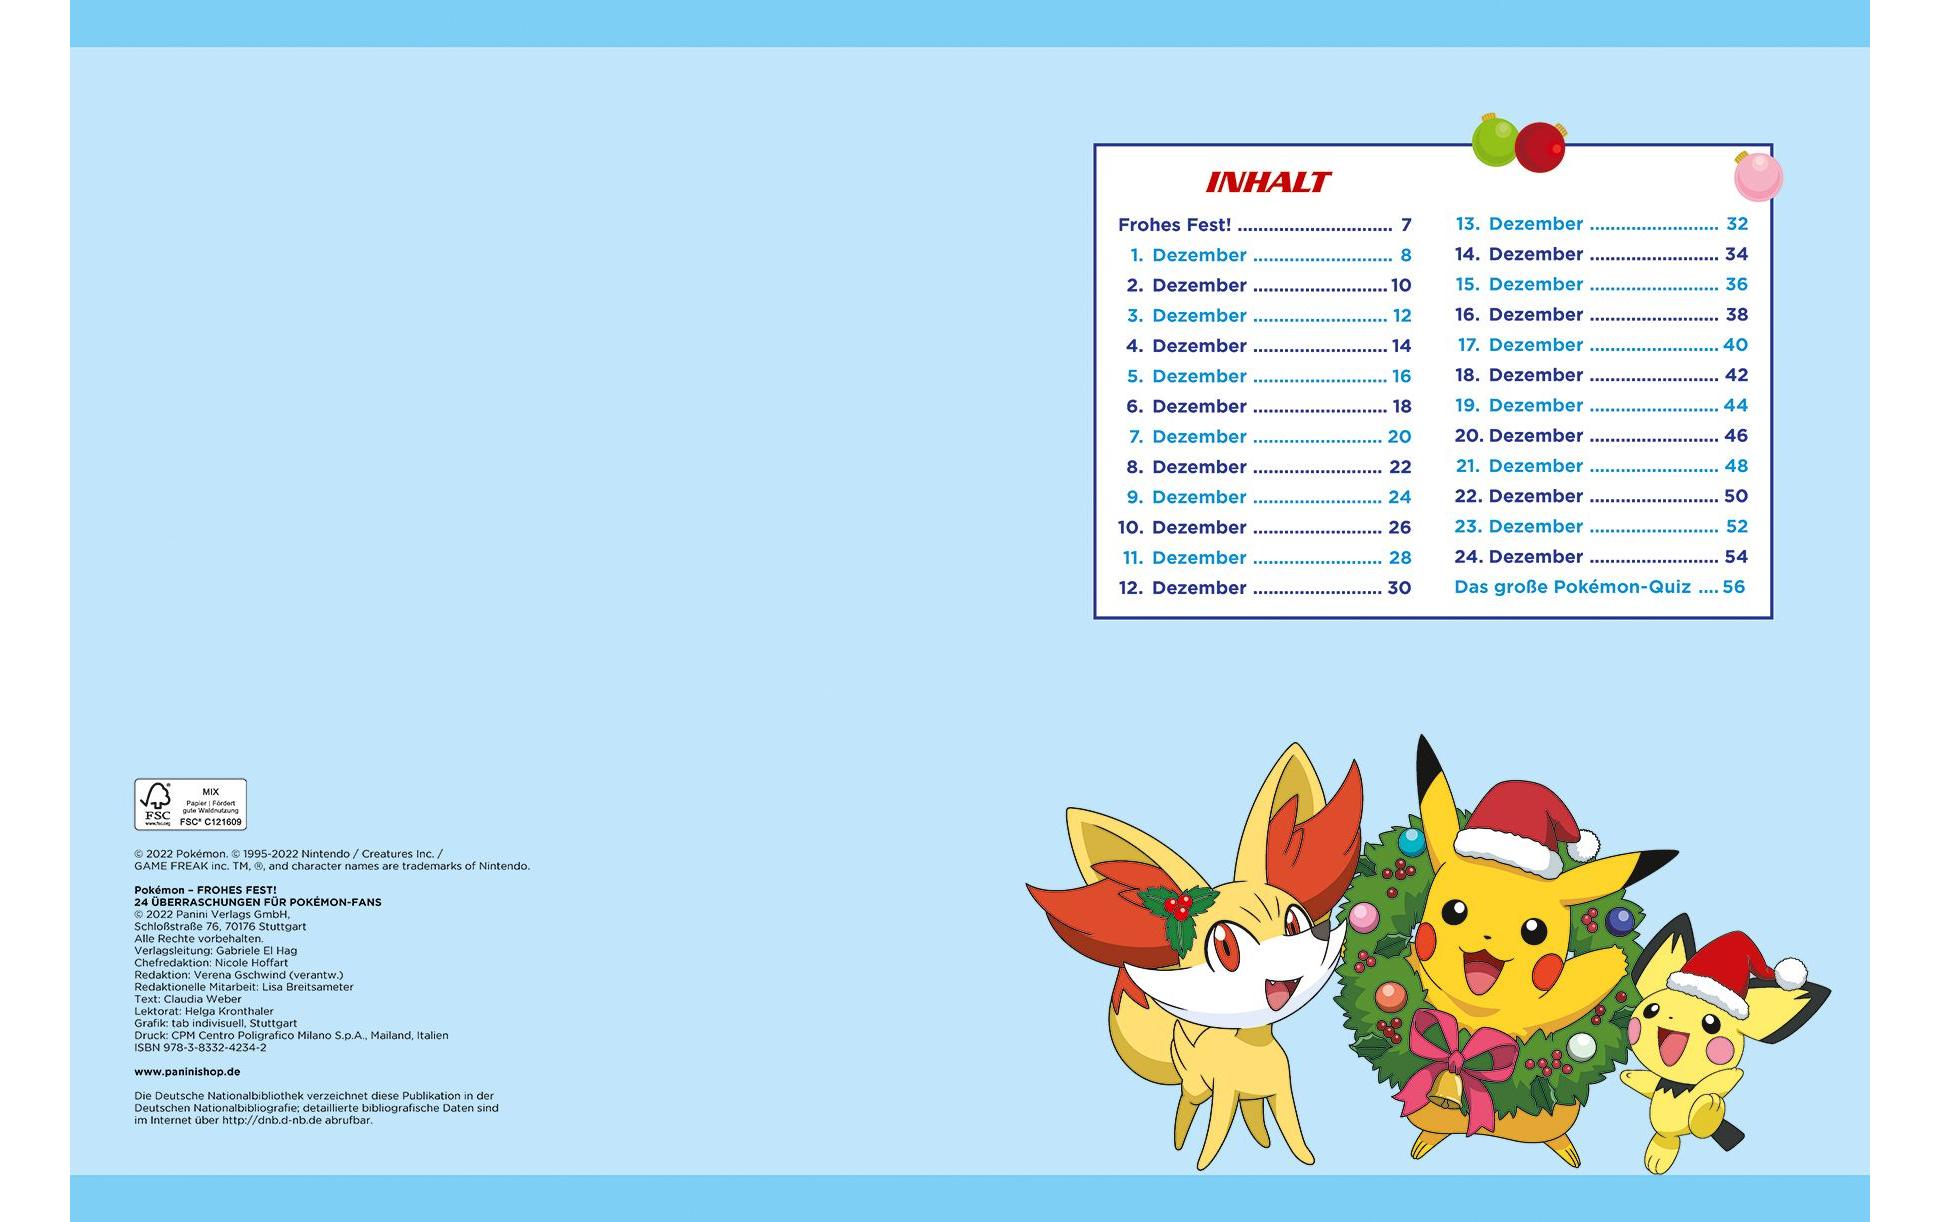 Literatur diverse Adventskalender Pokémon 24 Überraschungen